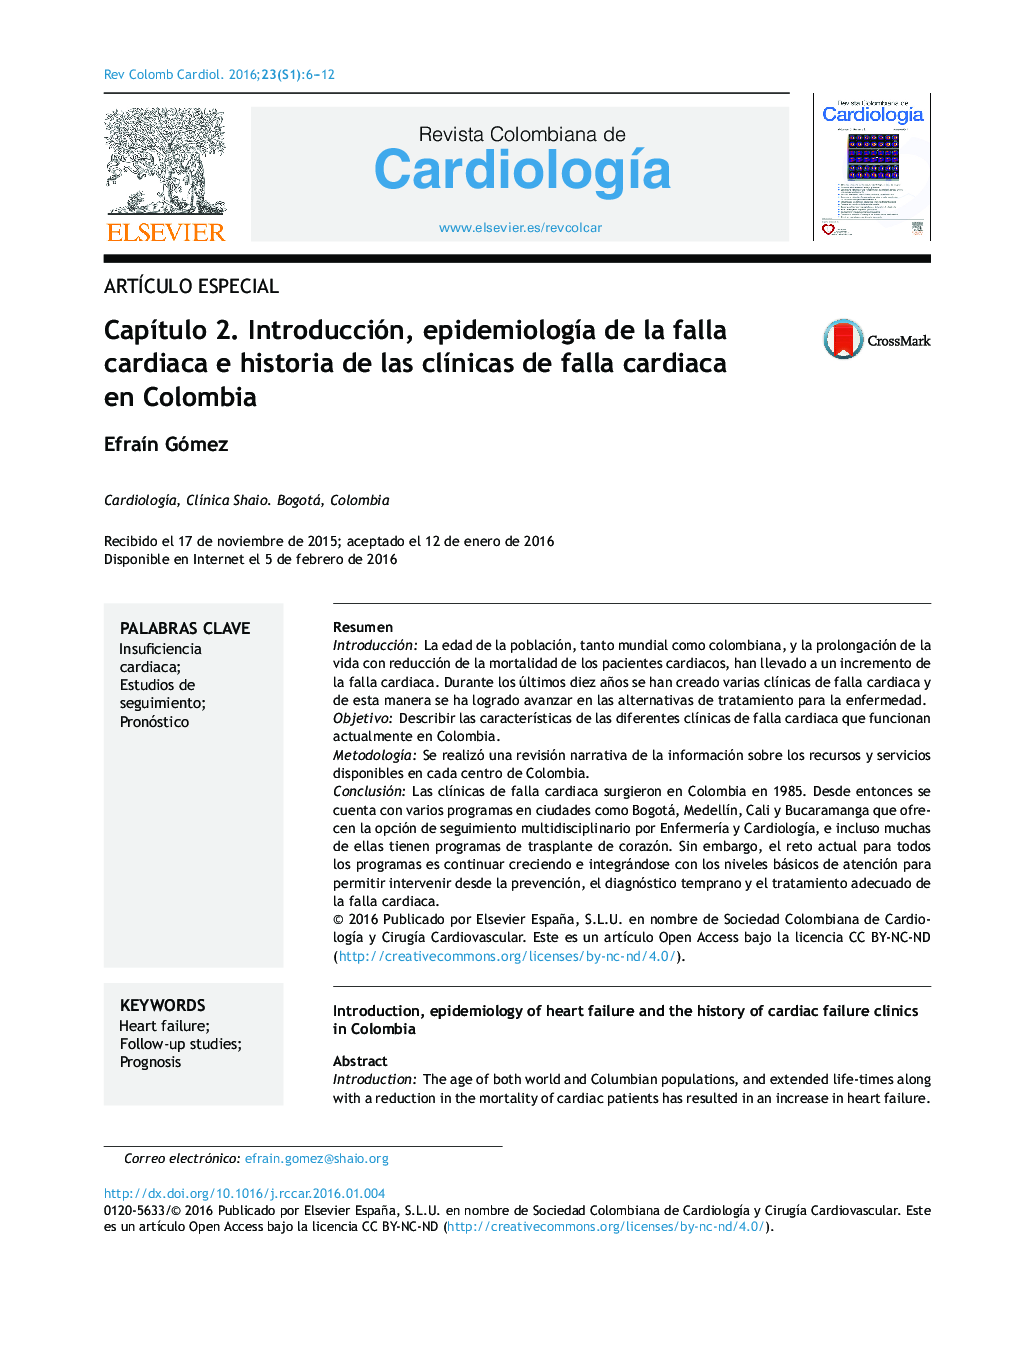 فصل دوم مقدمه، اپیدمیولوژی نارسایی قلبی و تاریخچه کلینیک های نارسایی قلبی در کلمبیا 